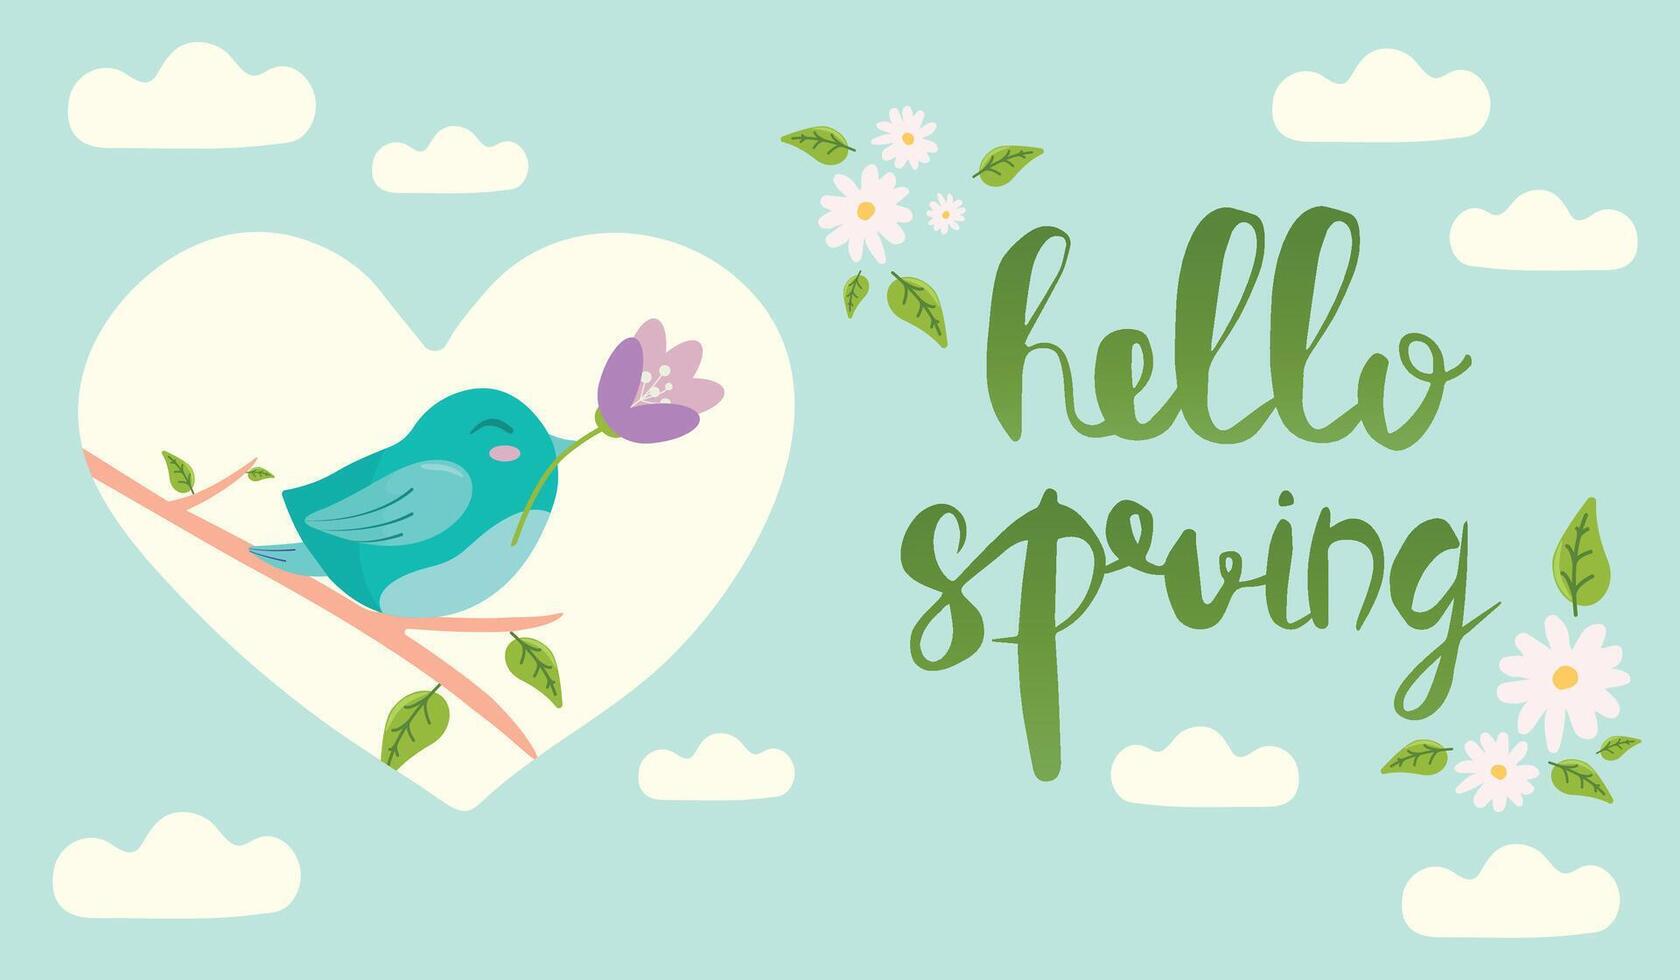 Hola primavera mano dibujado ilustración. temporada letras con pájaro participación y un flor. póster en plano estilo. vector